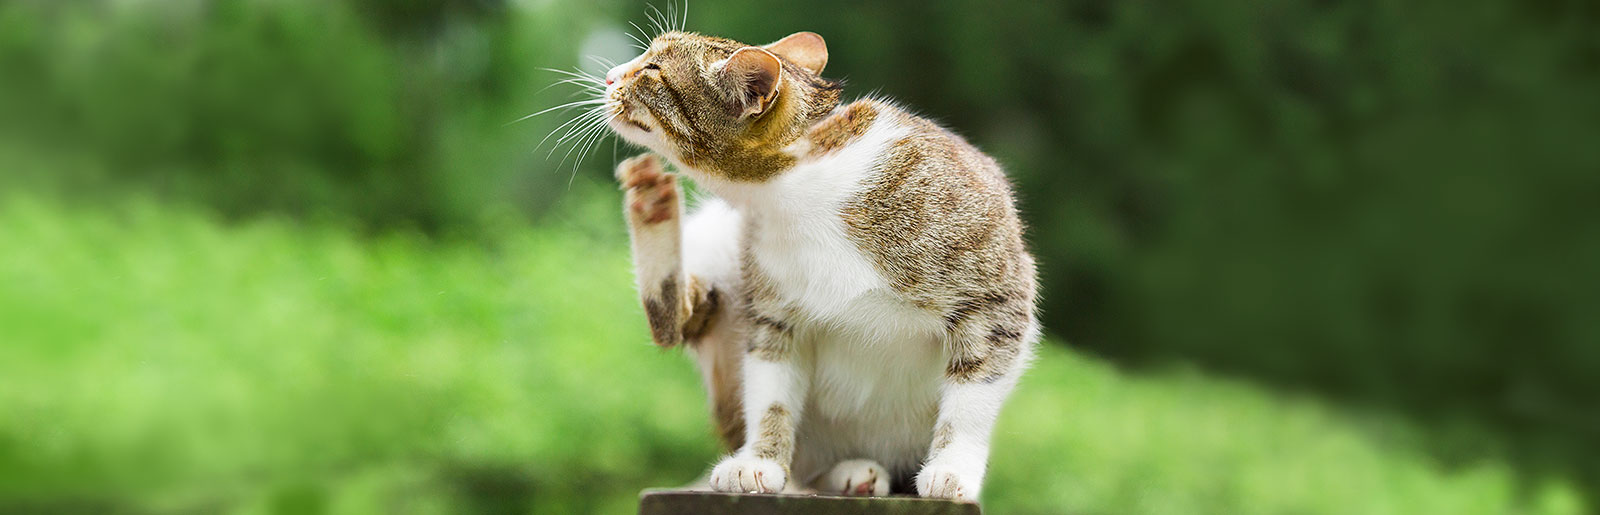 Futtermittelallergie oder Futtermittelunverträglichkeit bei Katzen